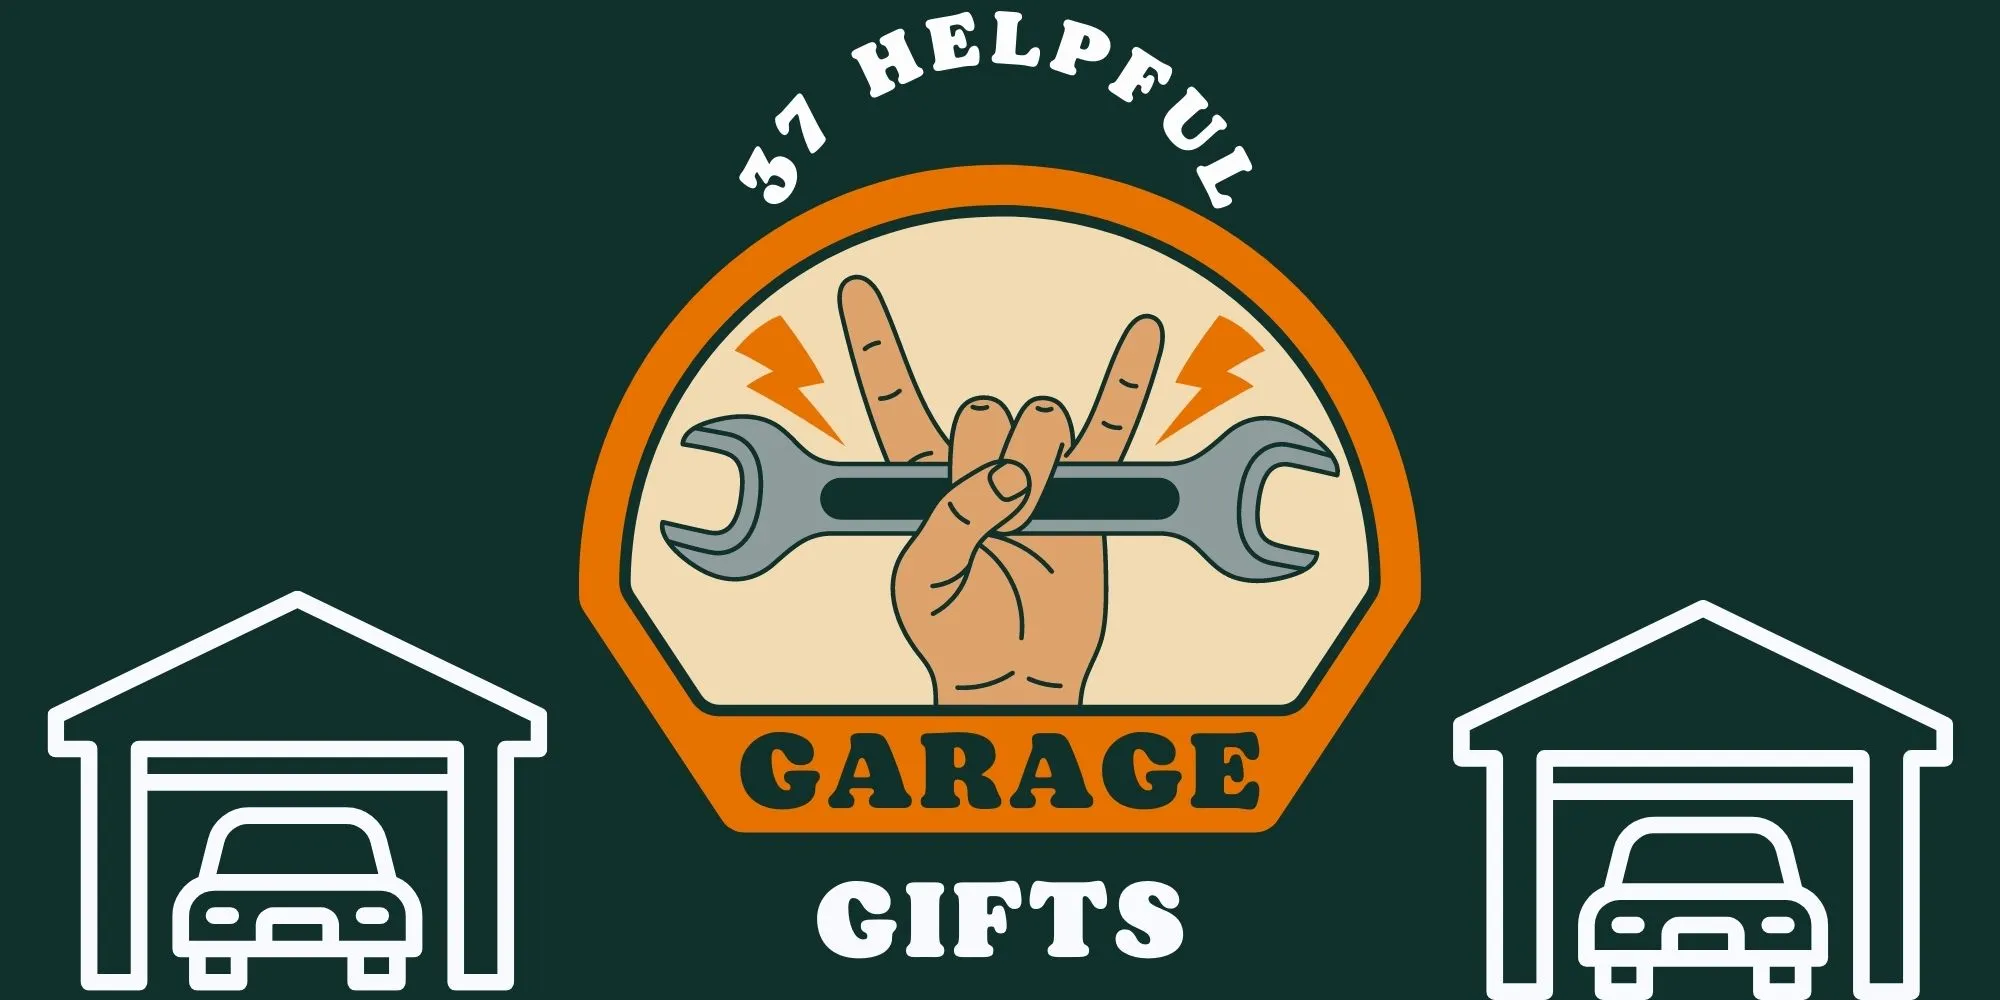 37 Helpful Garage Gifts